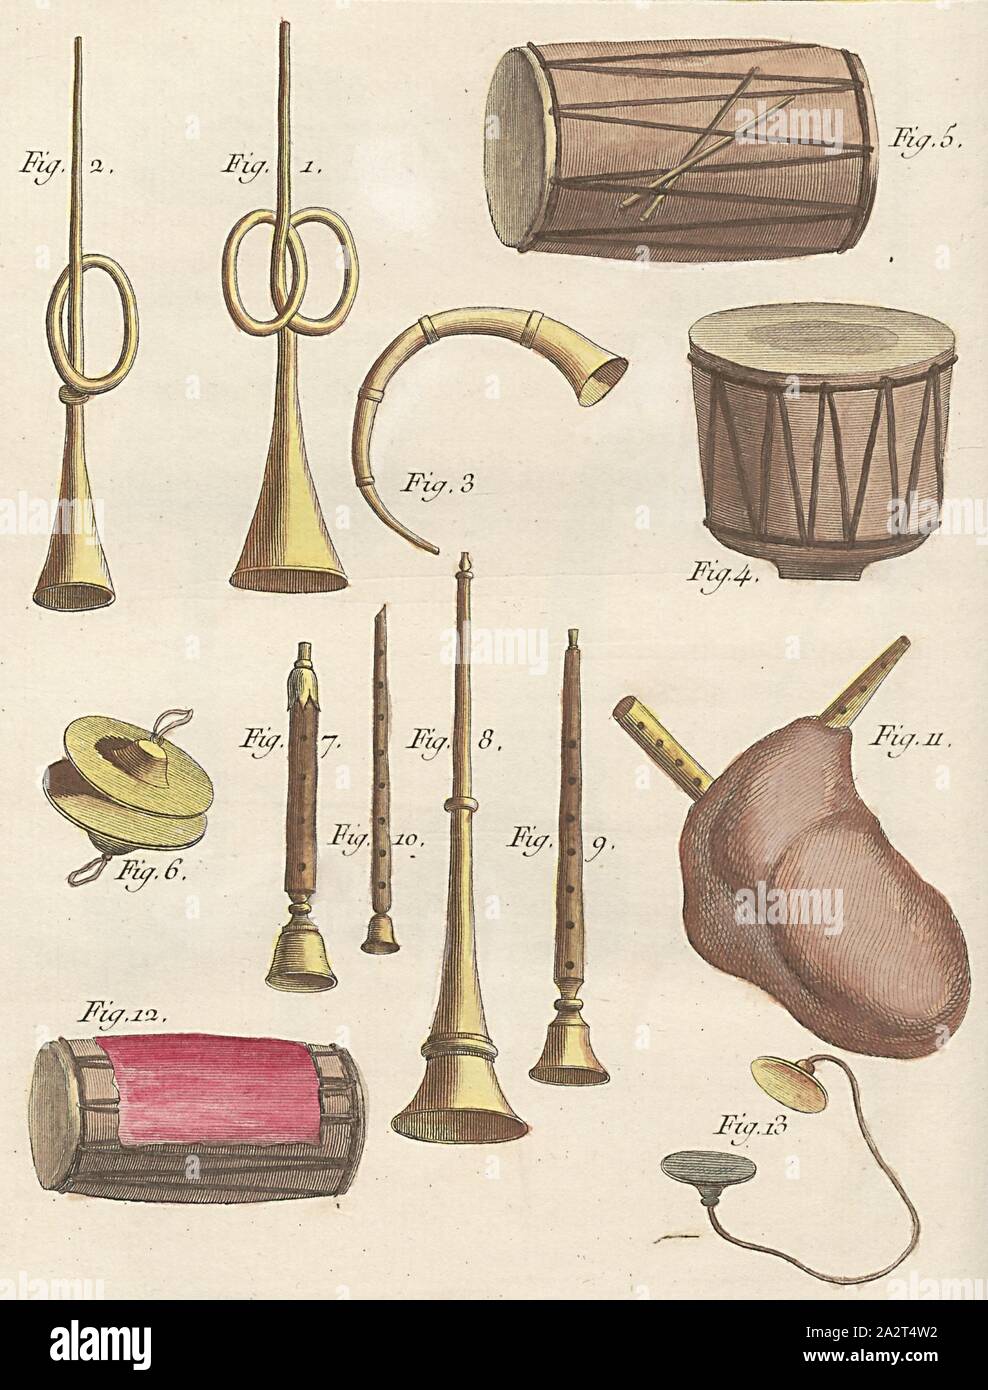 Instrumentos indios, diversos instrumentos musicales - trompetas, flautas,  tambores y platillos de gaita, Firmado: P. Sonnerat pinx, Poisson sc, pl.  16, antes de la pág. 101 (vol. 1), Sonnerat, Pierre M. (PINX);